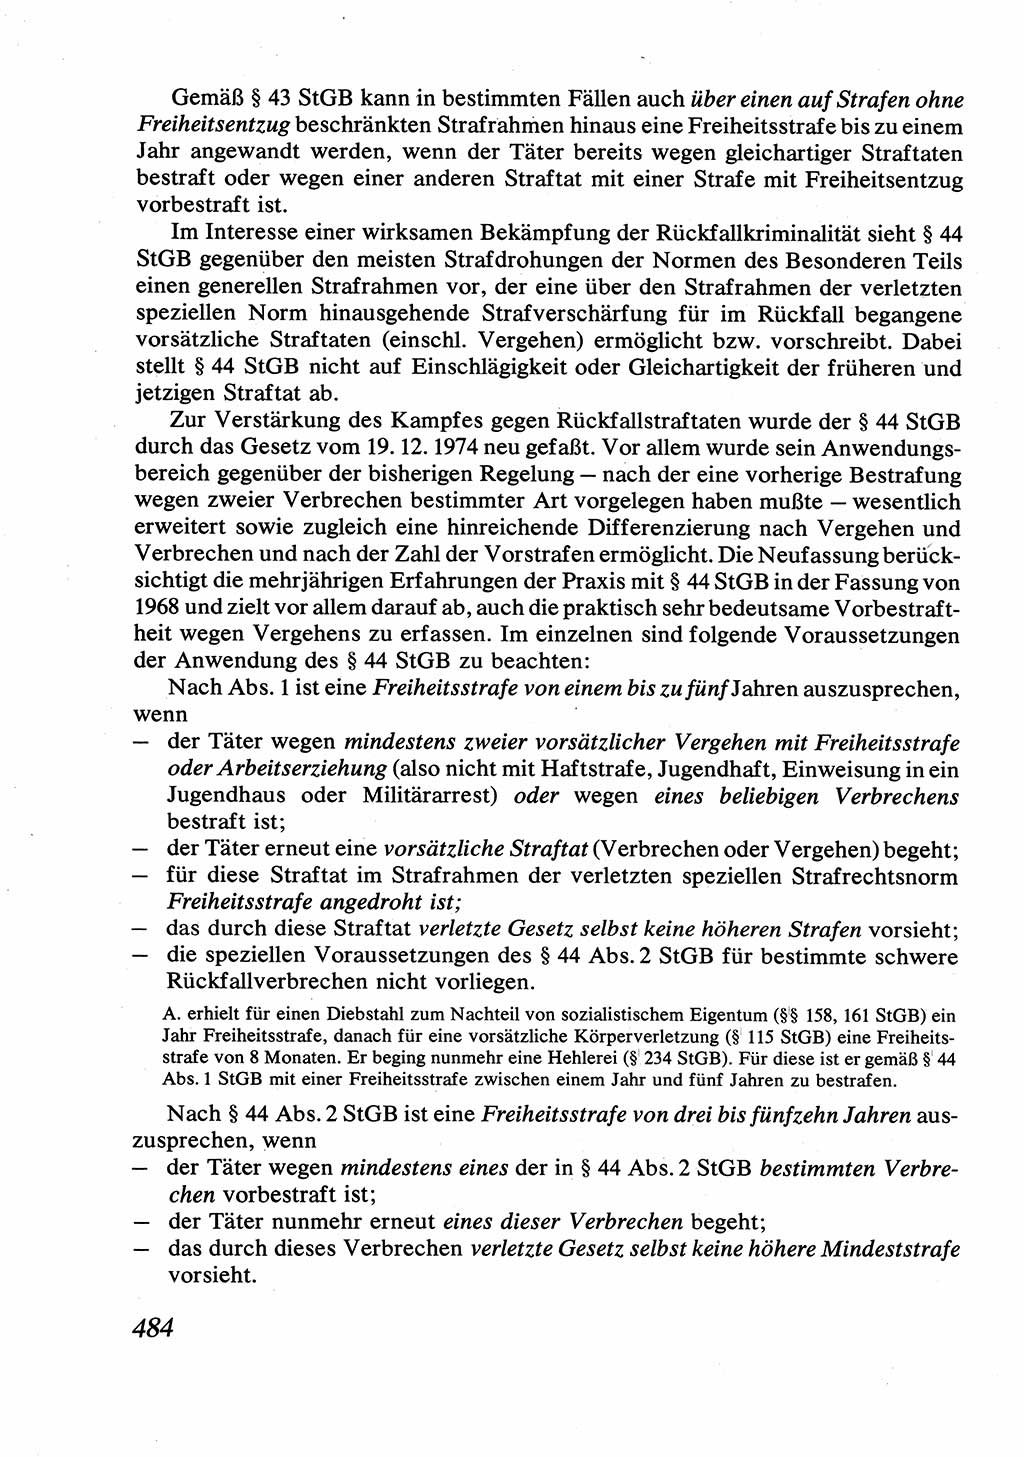 Strafrecht [Deutsche Demokratische Republik (DDR)], Allgemeiner Teil, Lehrbuch 1976, Seite 484 (Strafr. DDR AT Lb. 1976, S. 484)